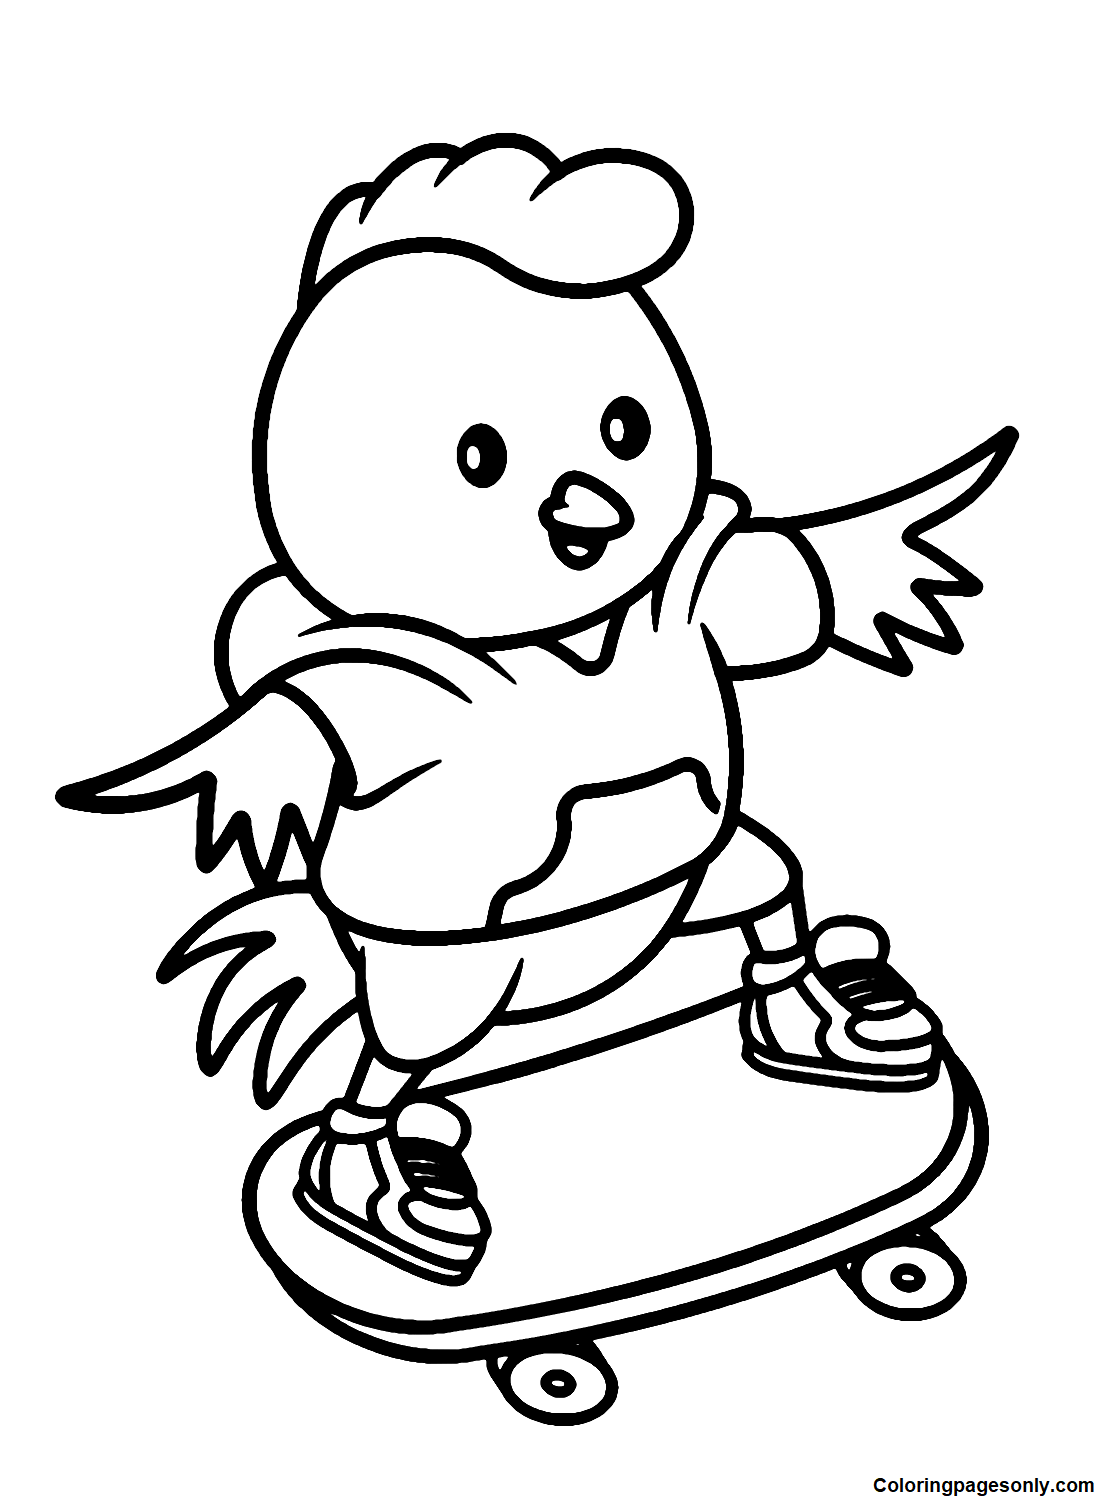 Páginas para colorear de dibujos animados de pollo jugando patineta -  Páginas para colorear juveniles - Páginas para colorear para niños y adultos